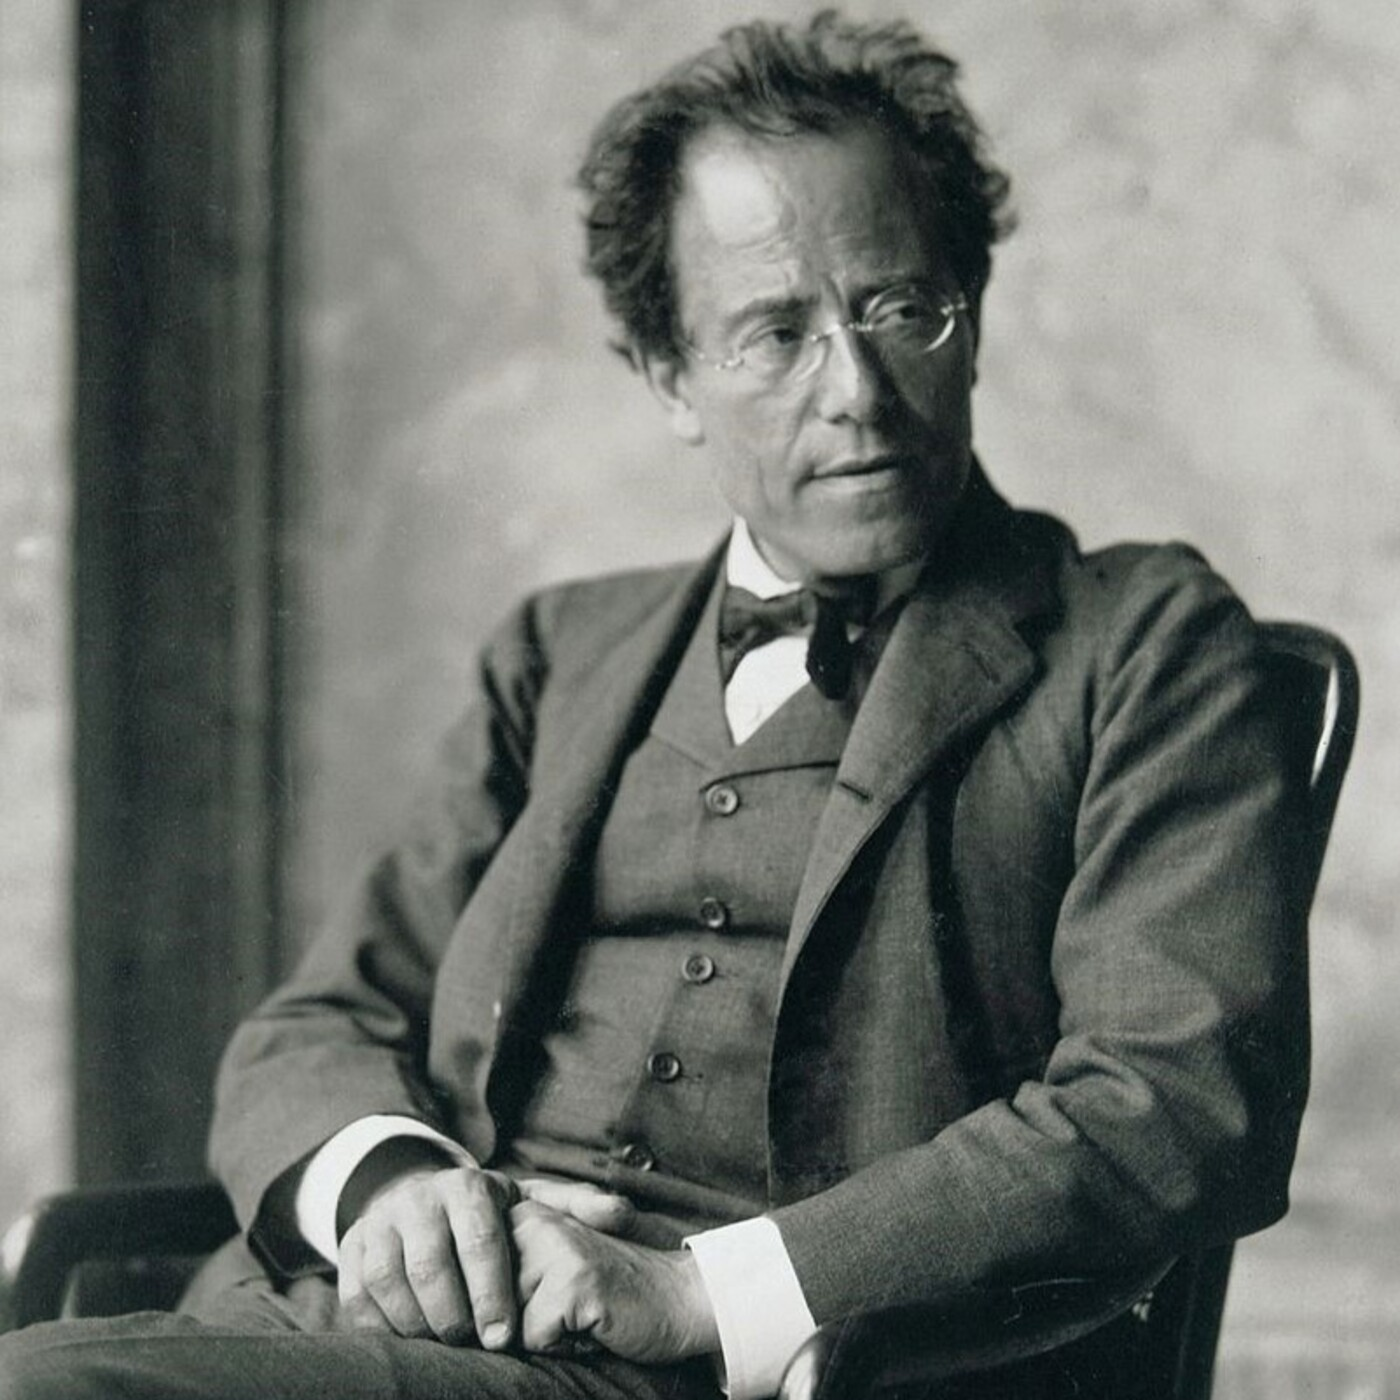 Mahler's Symphony No. 1: A rewarding symphonic journey!